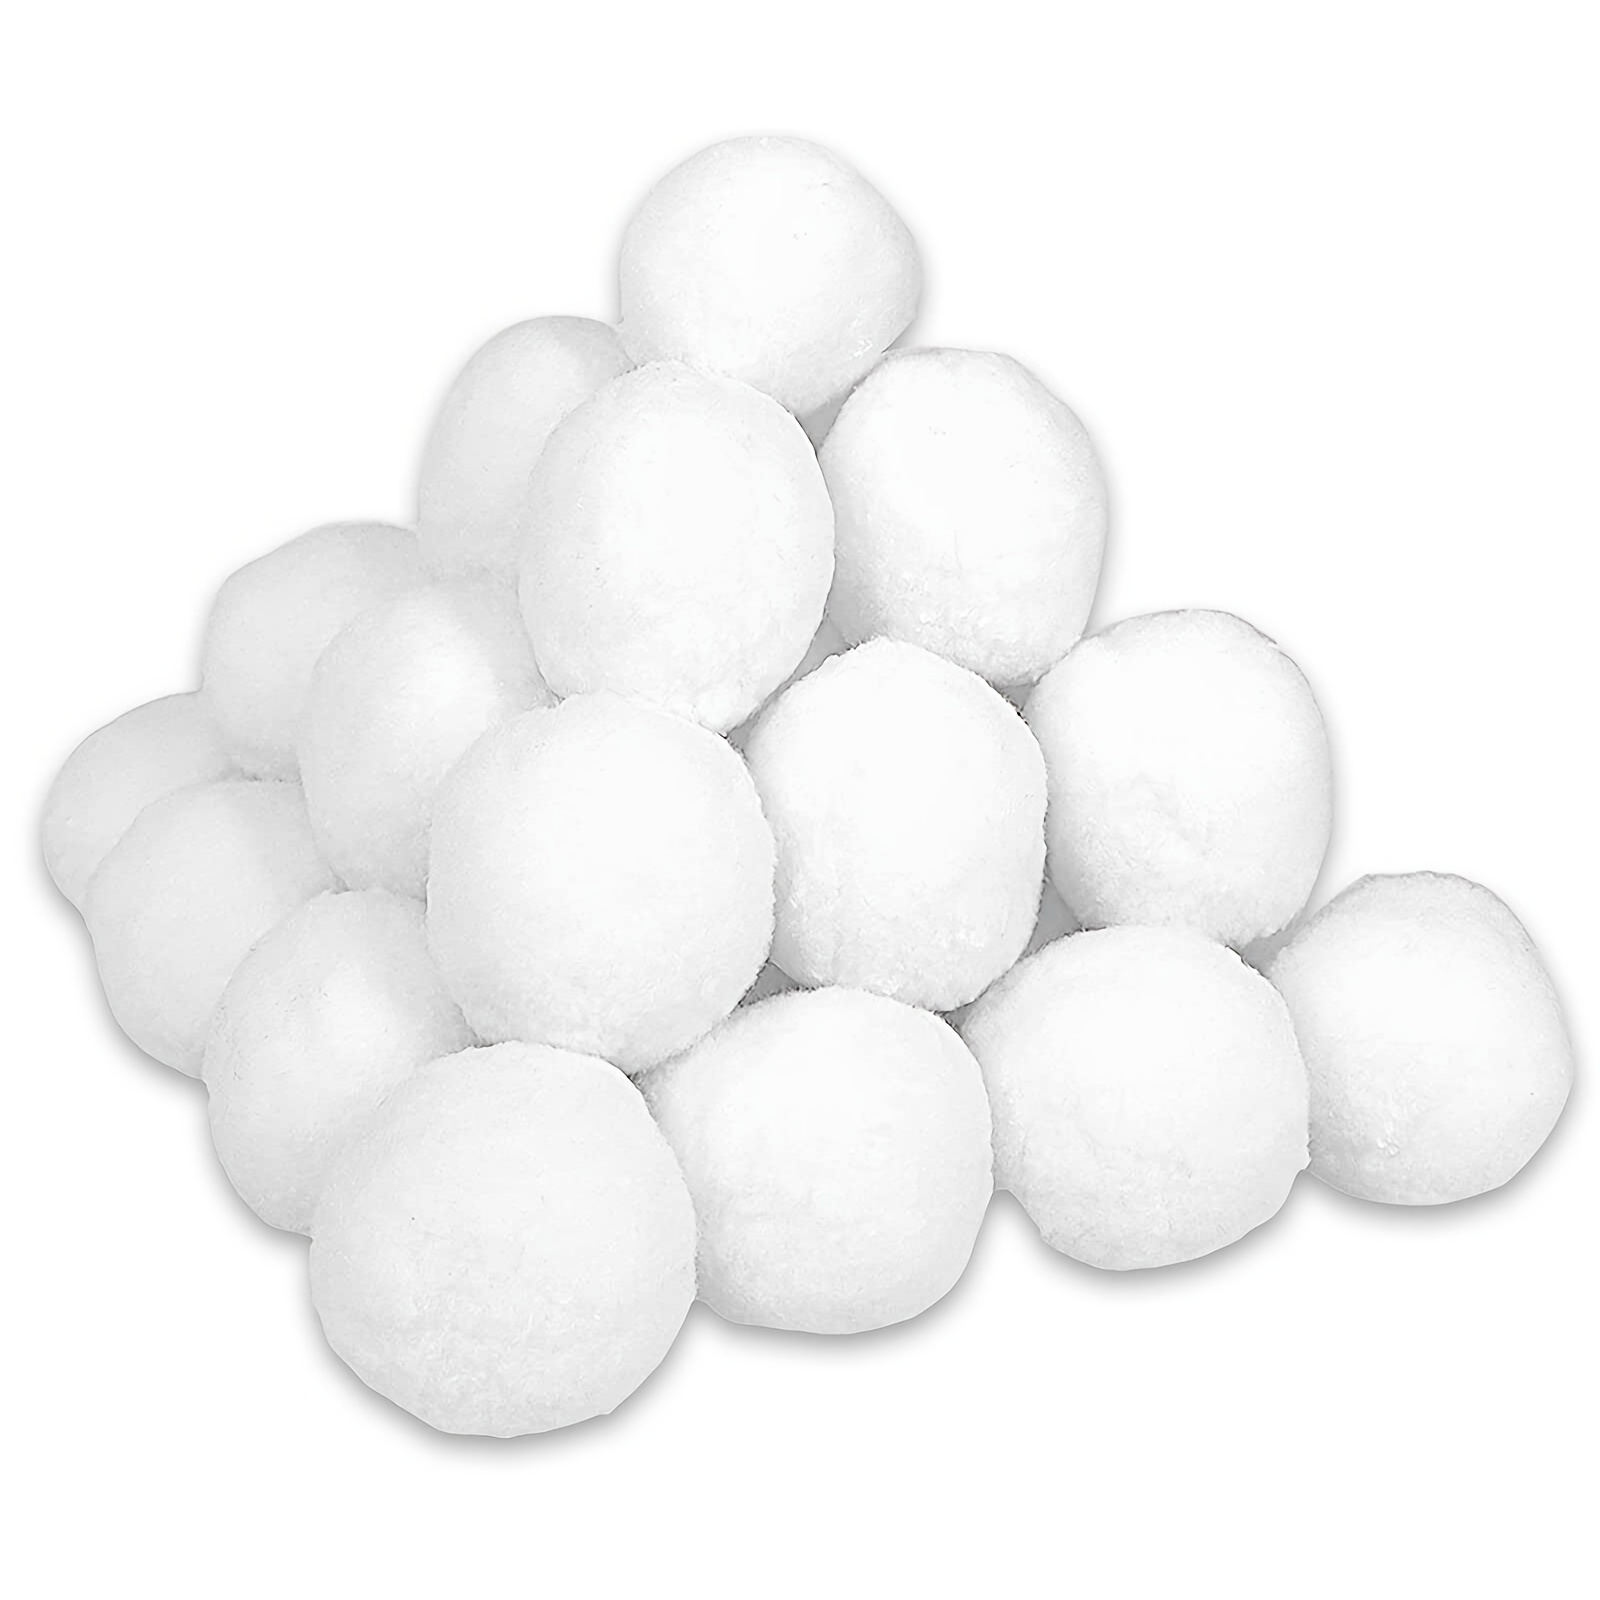 Indoor Snowballs For Kids indoor Snowball Fight Set - Temu